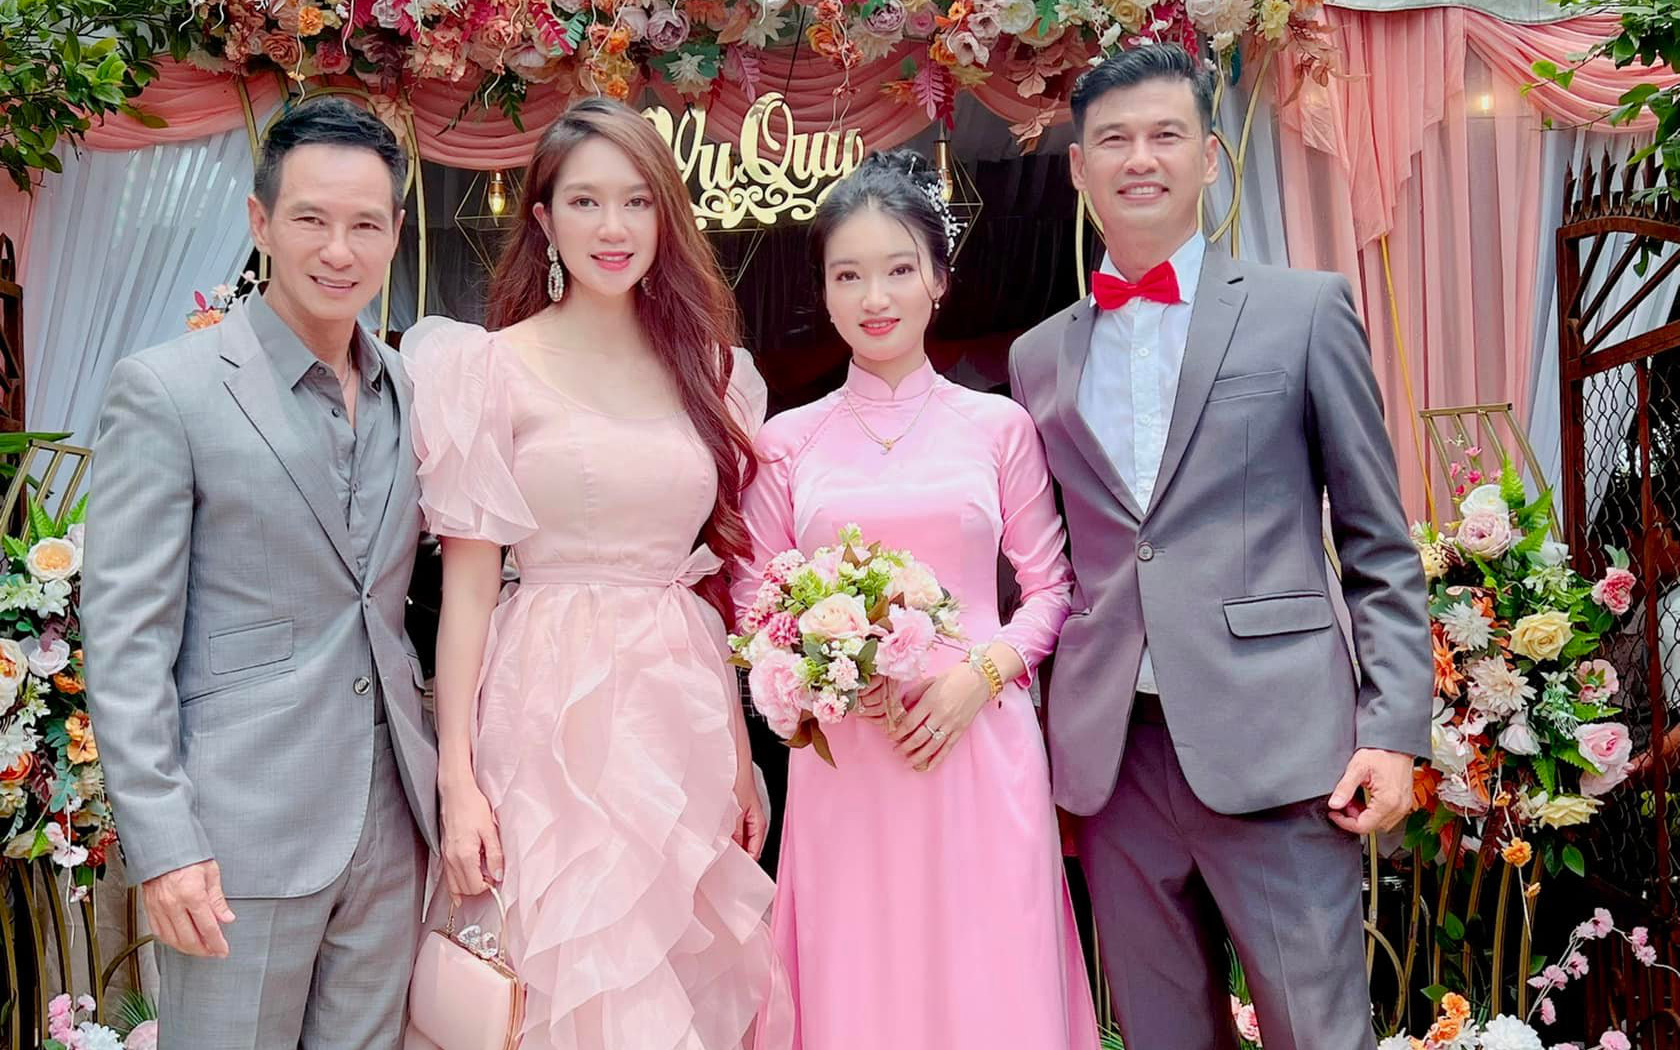 Dàn sao Việt quy tụ trong đám cưới của nam diễn viên nổi tiếng lấy vợ ở tuổi 49